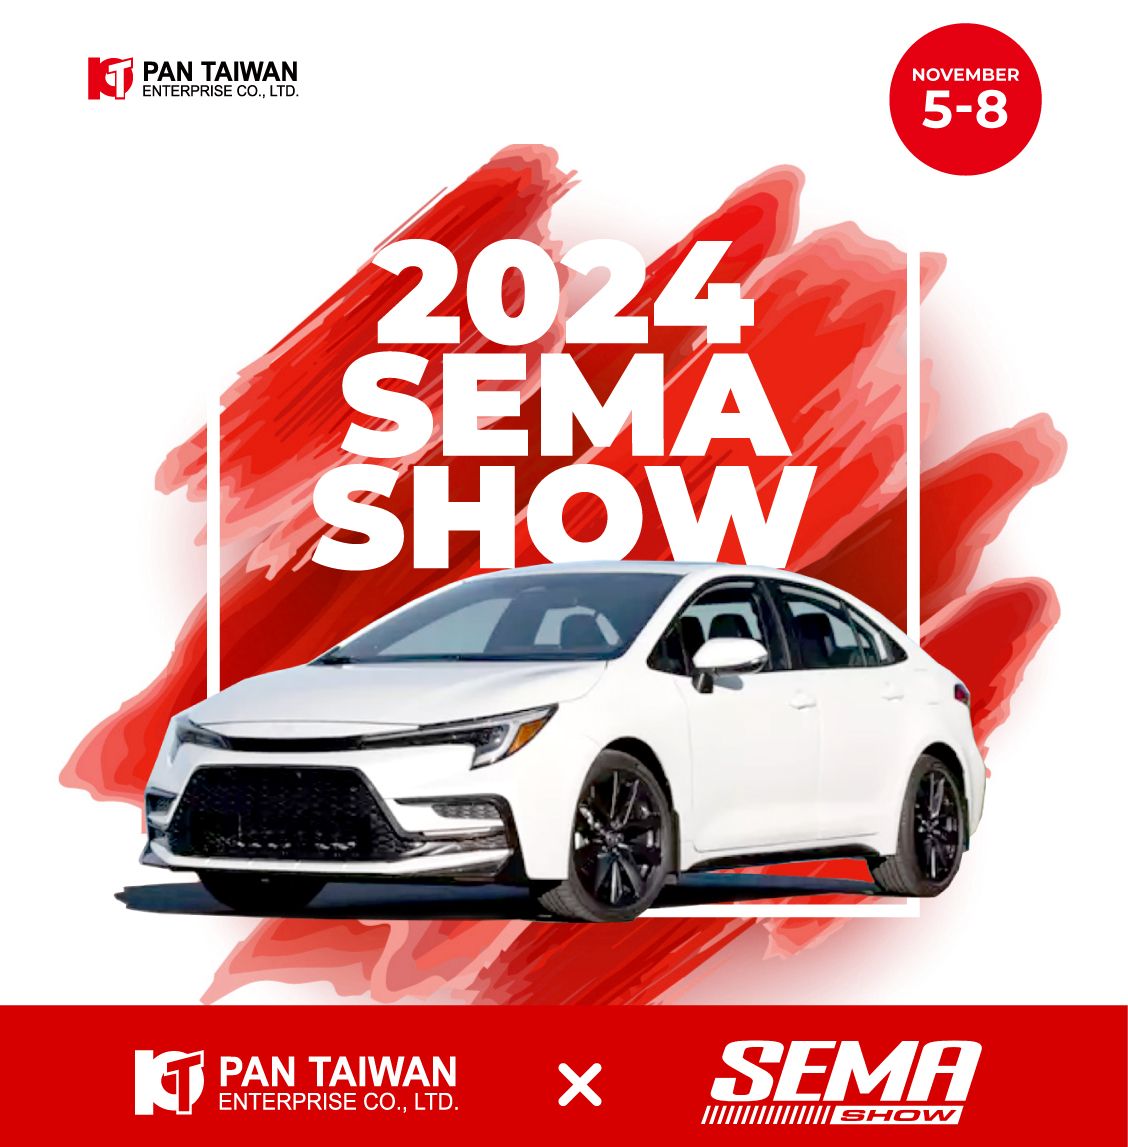 Pan Taiwan, přední výrobce automobilových dílů se sídlem na Tchaj-wanu, je nadšen, že bude vystavovat své inovativní produkty na veletrhu SEMA Show v Las Vegas od 5. do 8. listopadu 2024.